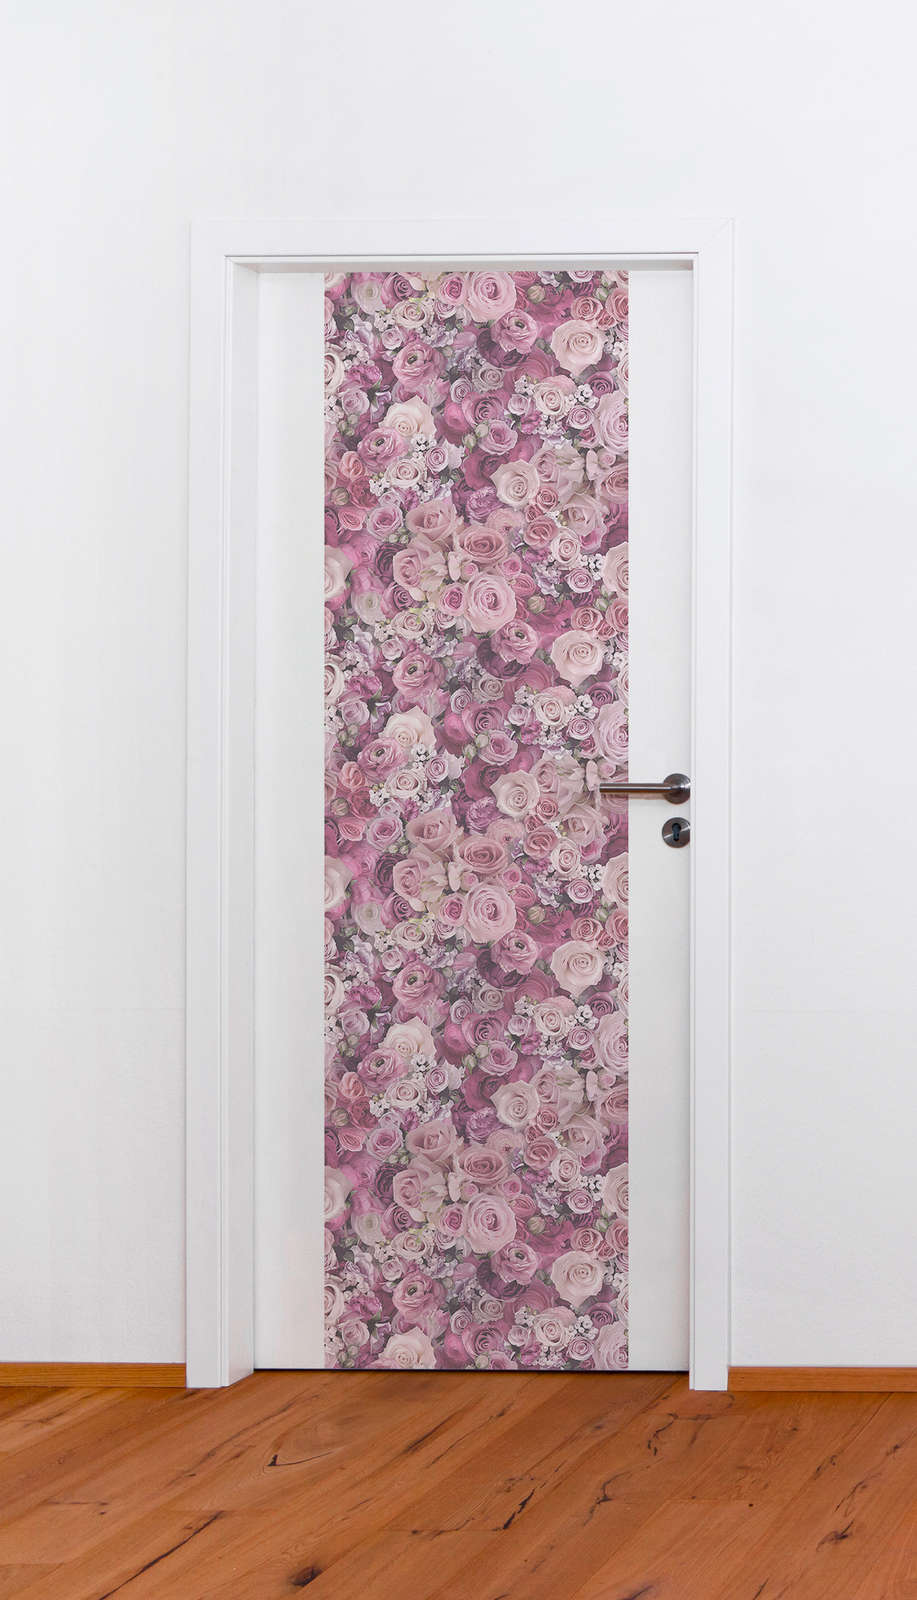             Vliesbehang rozen met 3D motief - roze, violet
        